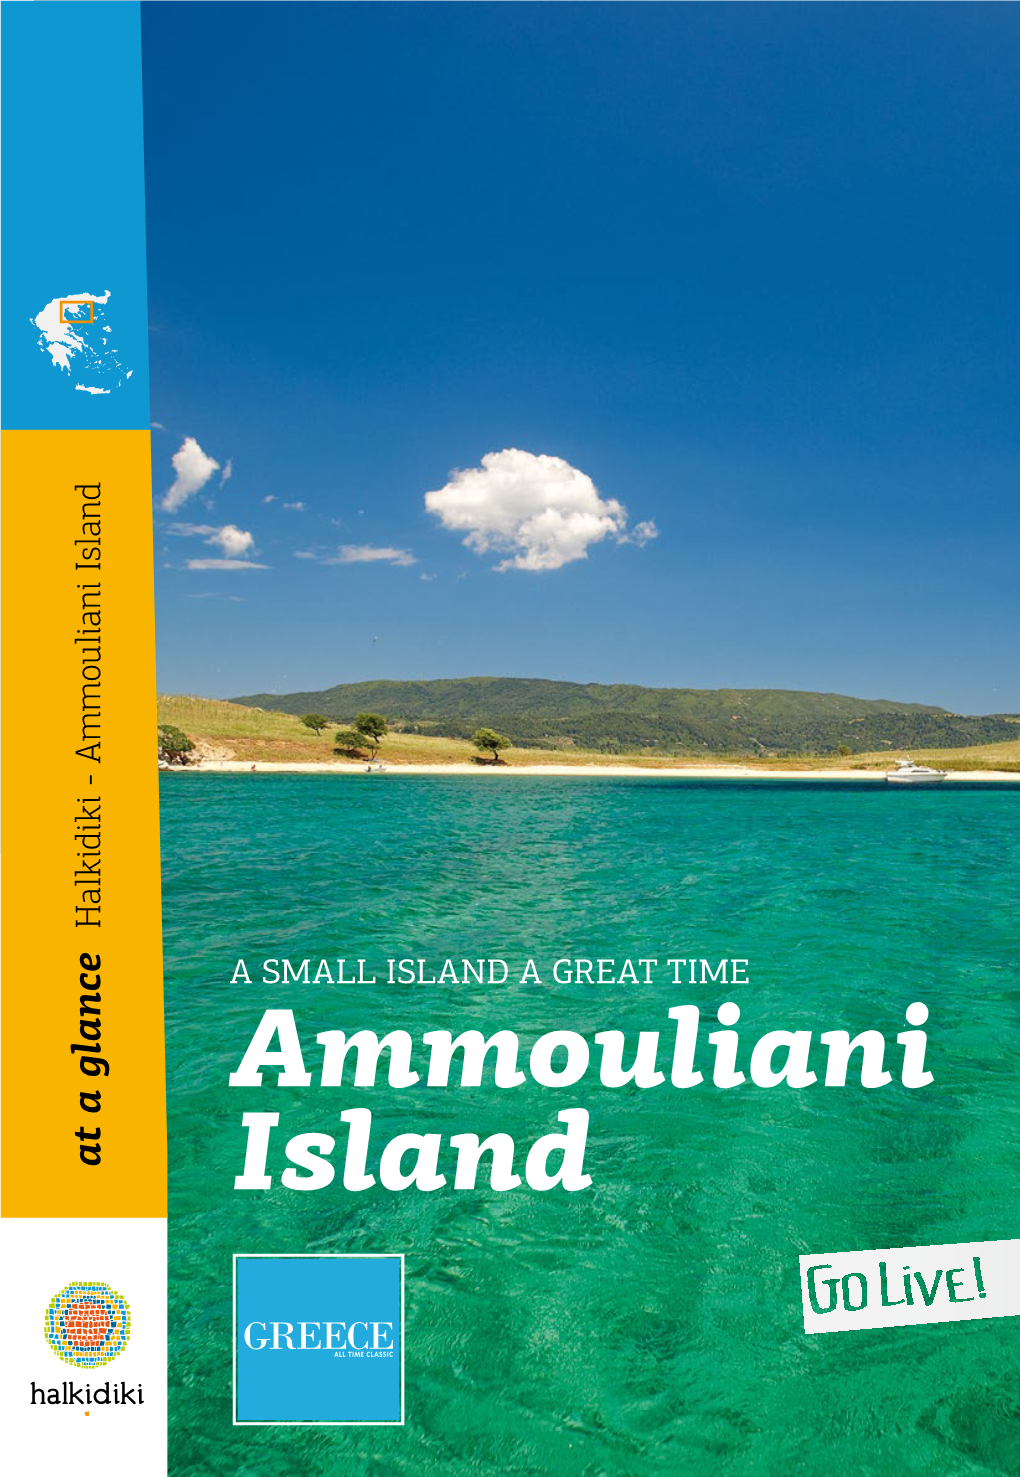 Ammouliani Island